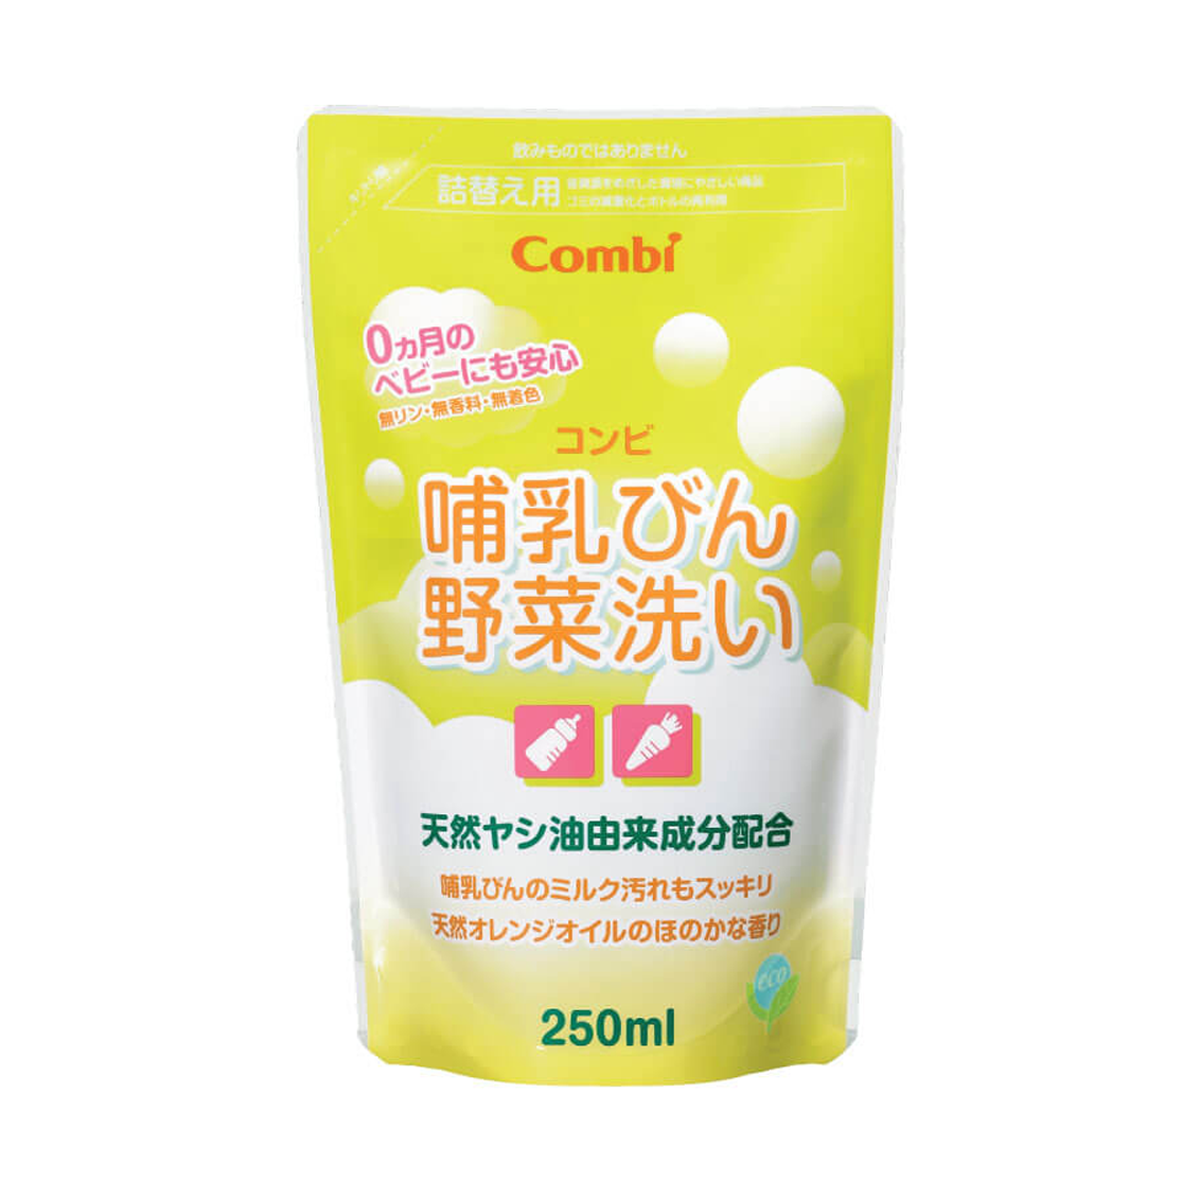 Made in Japan Túi dung dịch rửa bình sữa và rau quả Combi 250ml